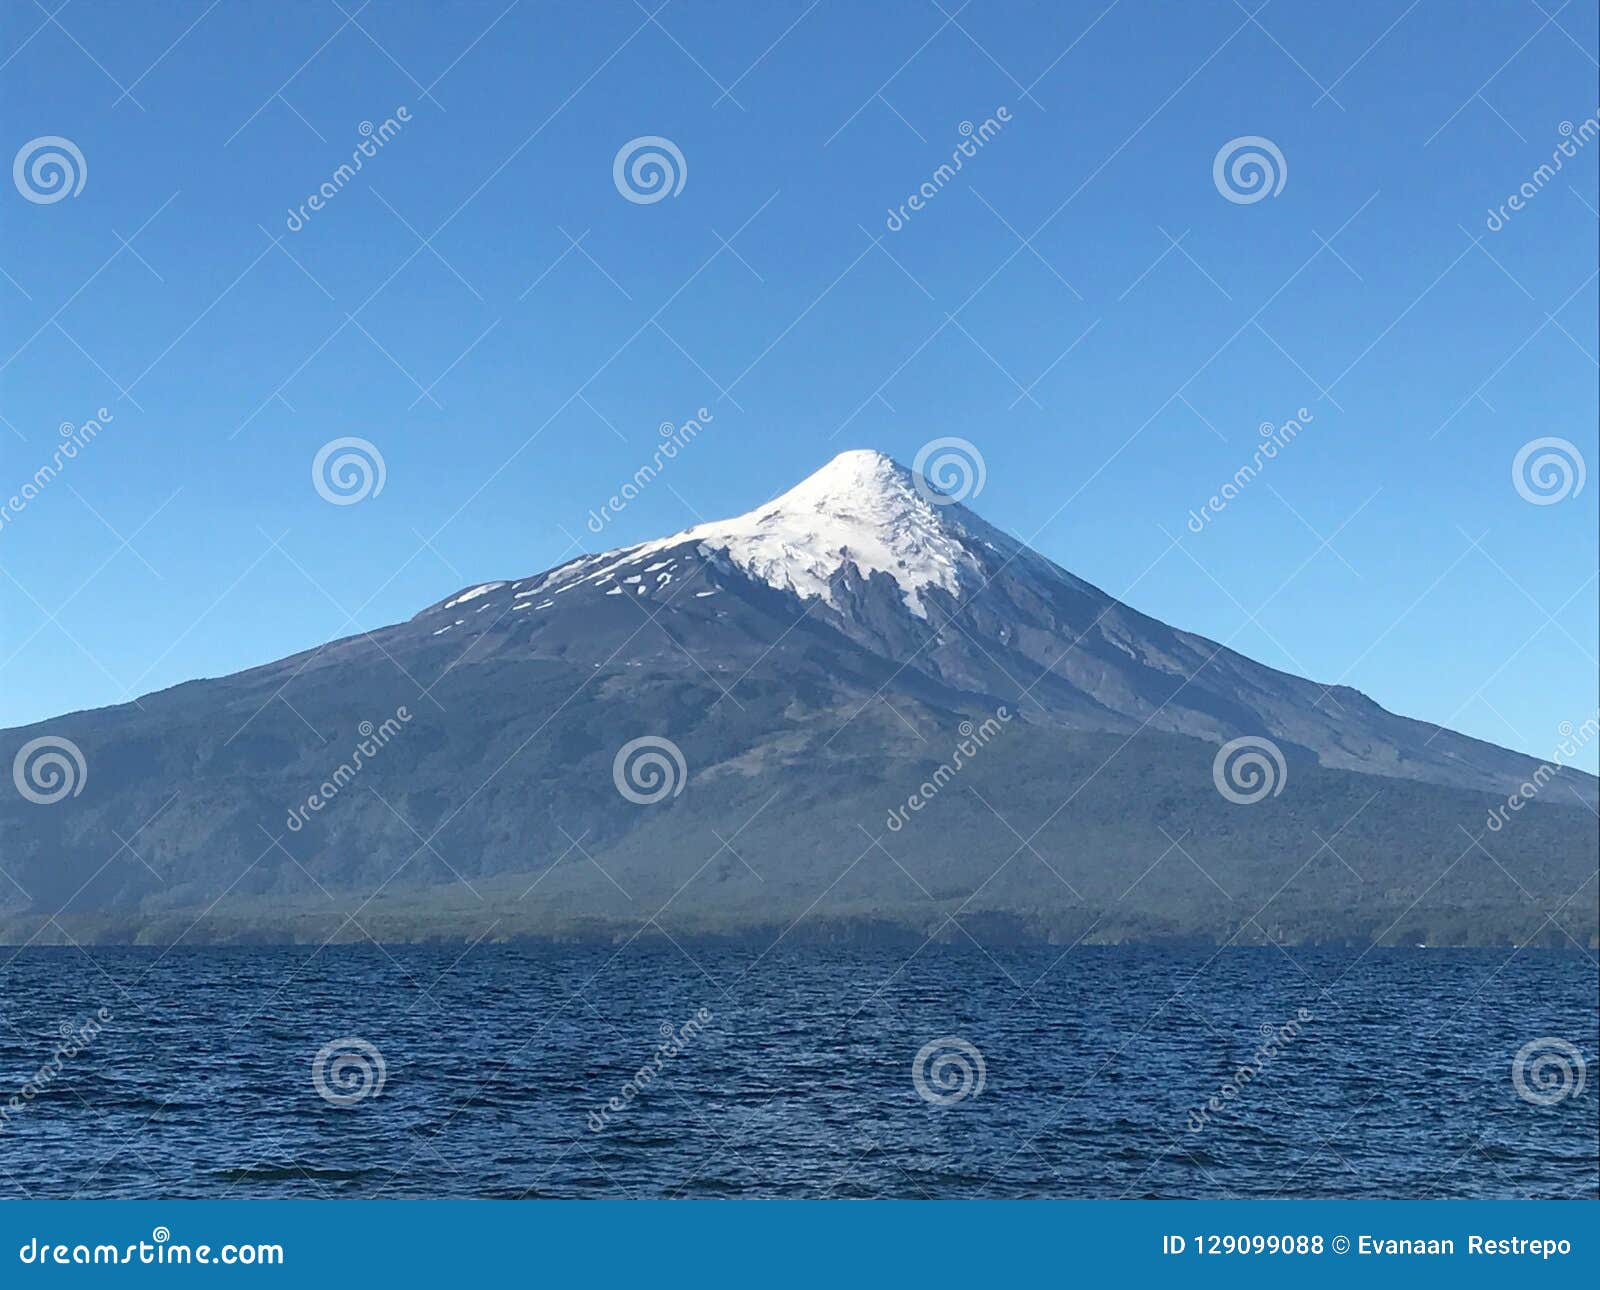 osorno volcano in region de los lagos chile